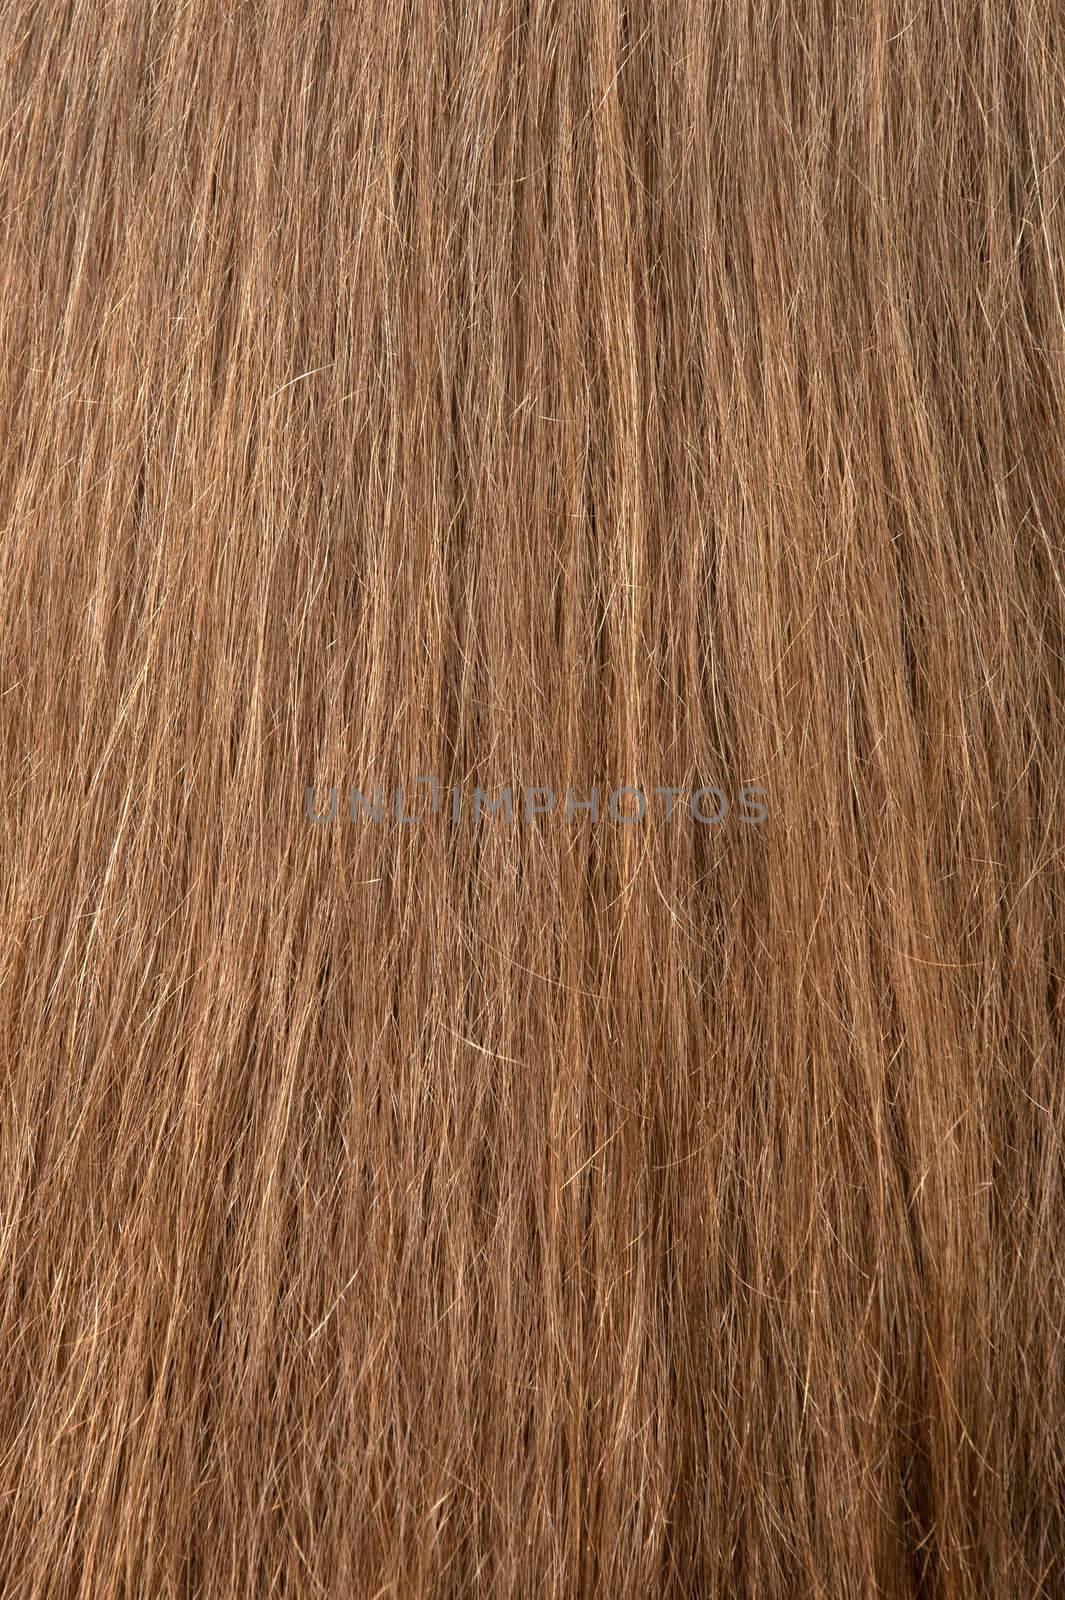 Female hair texture. The rear view